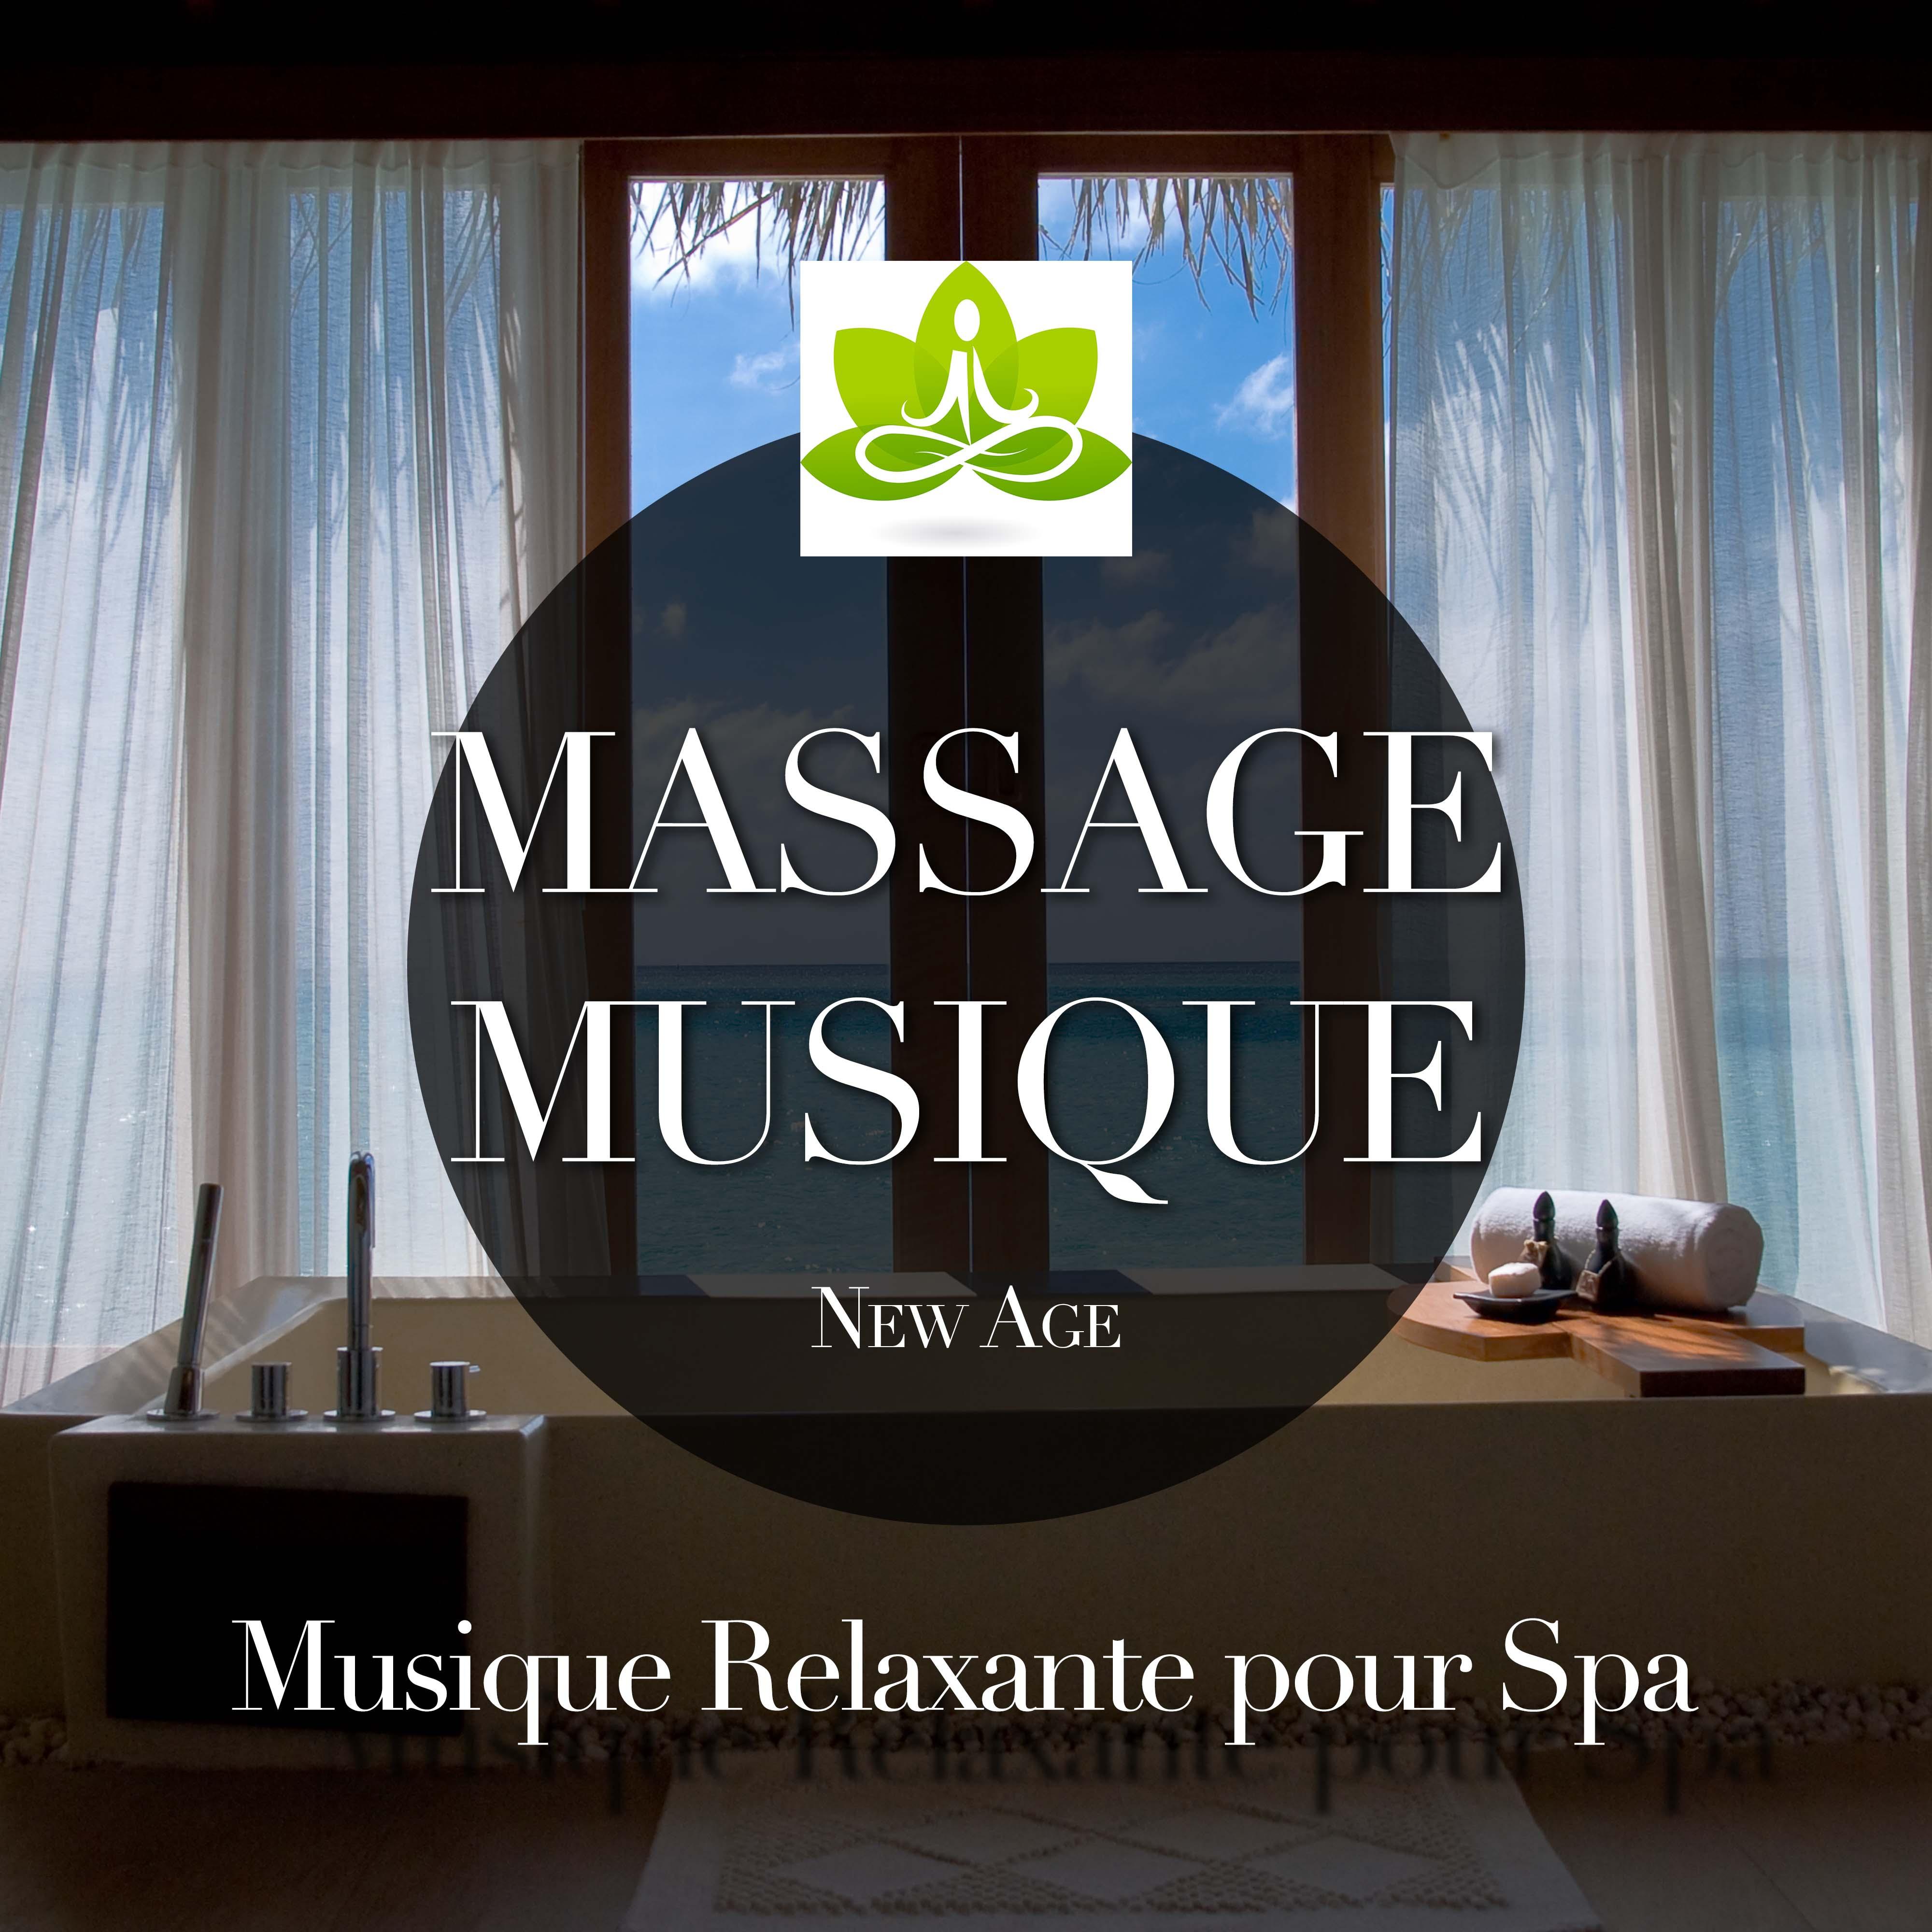 Massage Musique: Musique Relaxante pour Spa et Institut de Beaute, Musique Zen pour De tente, Meditation et BienEtre Ge neral